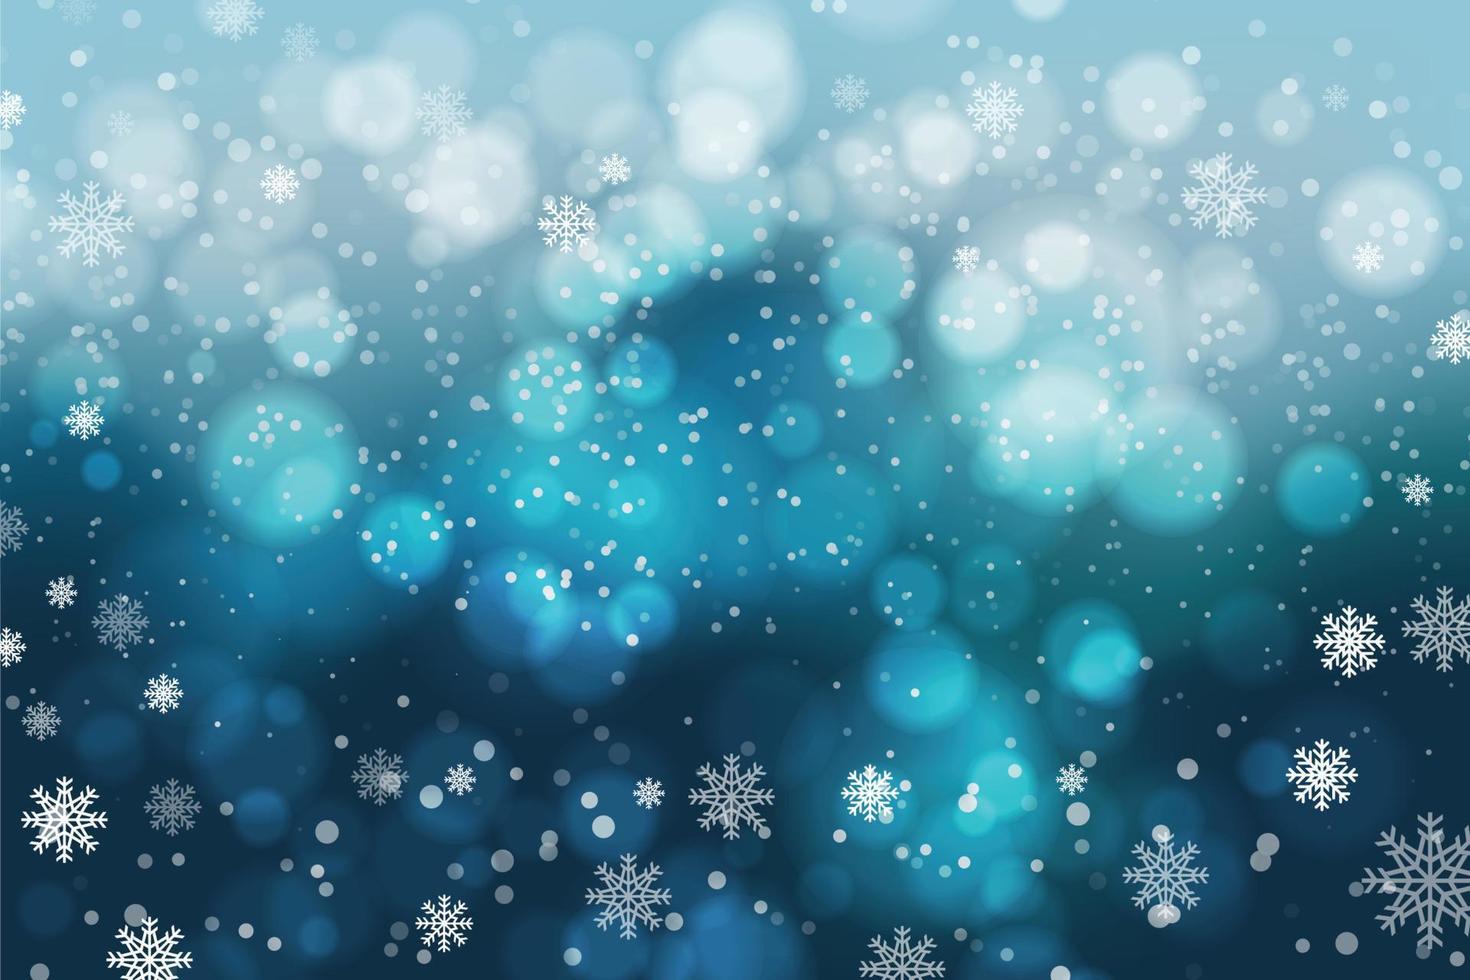 snöflingor och snöfall på en kall blå vinter- bakgrund. illustratör vektor eps 10.